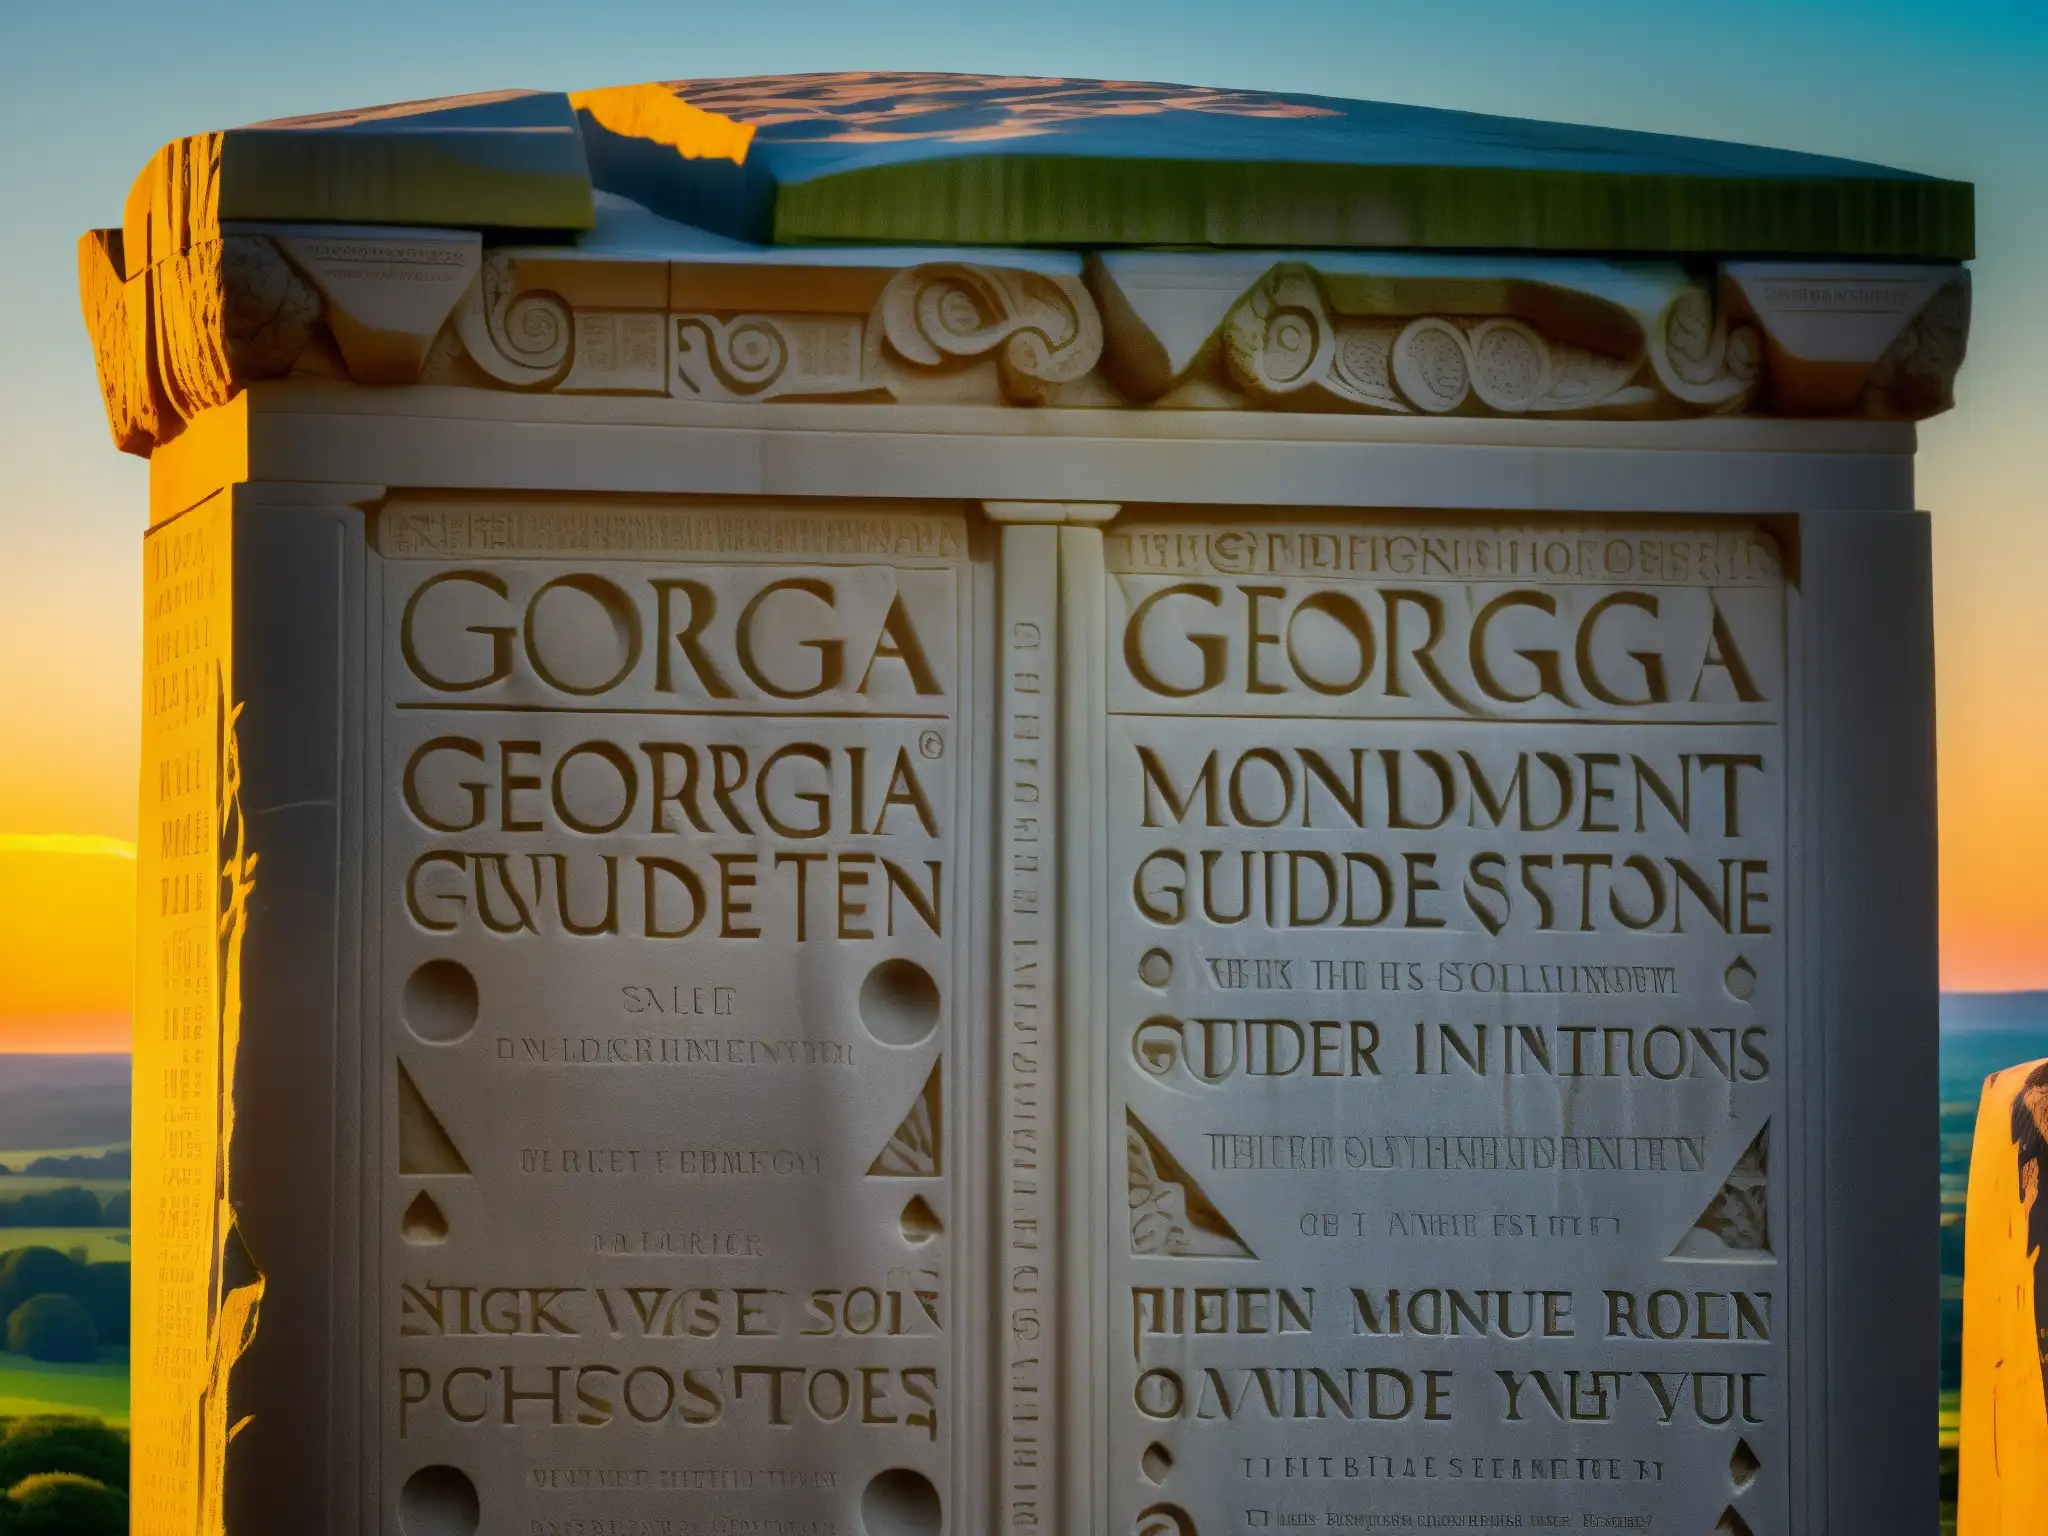 Detalles impresionantes de las inscripciones y grabados en las Georgia Guidestones, bañados por la cálida luz dorada del atardecer